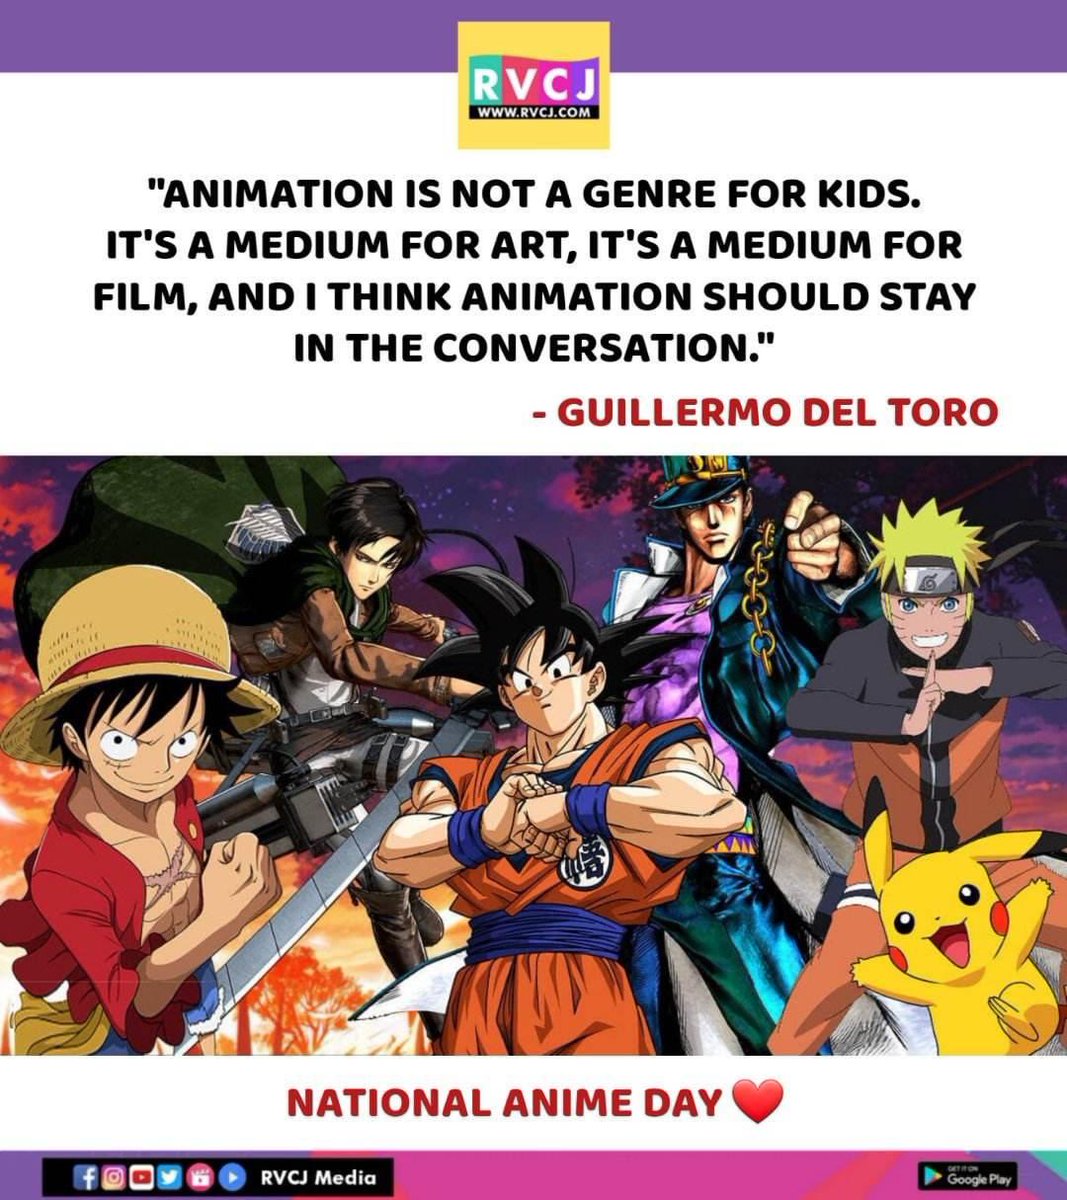 National Anime Day❤️
#anime #animes #nationalanimeday #rvcjmovies